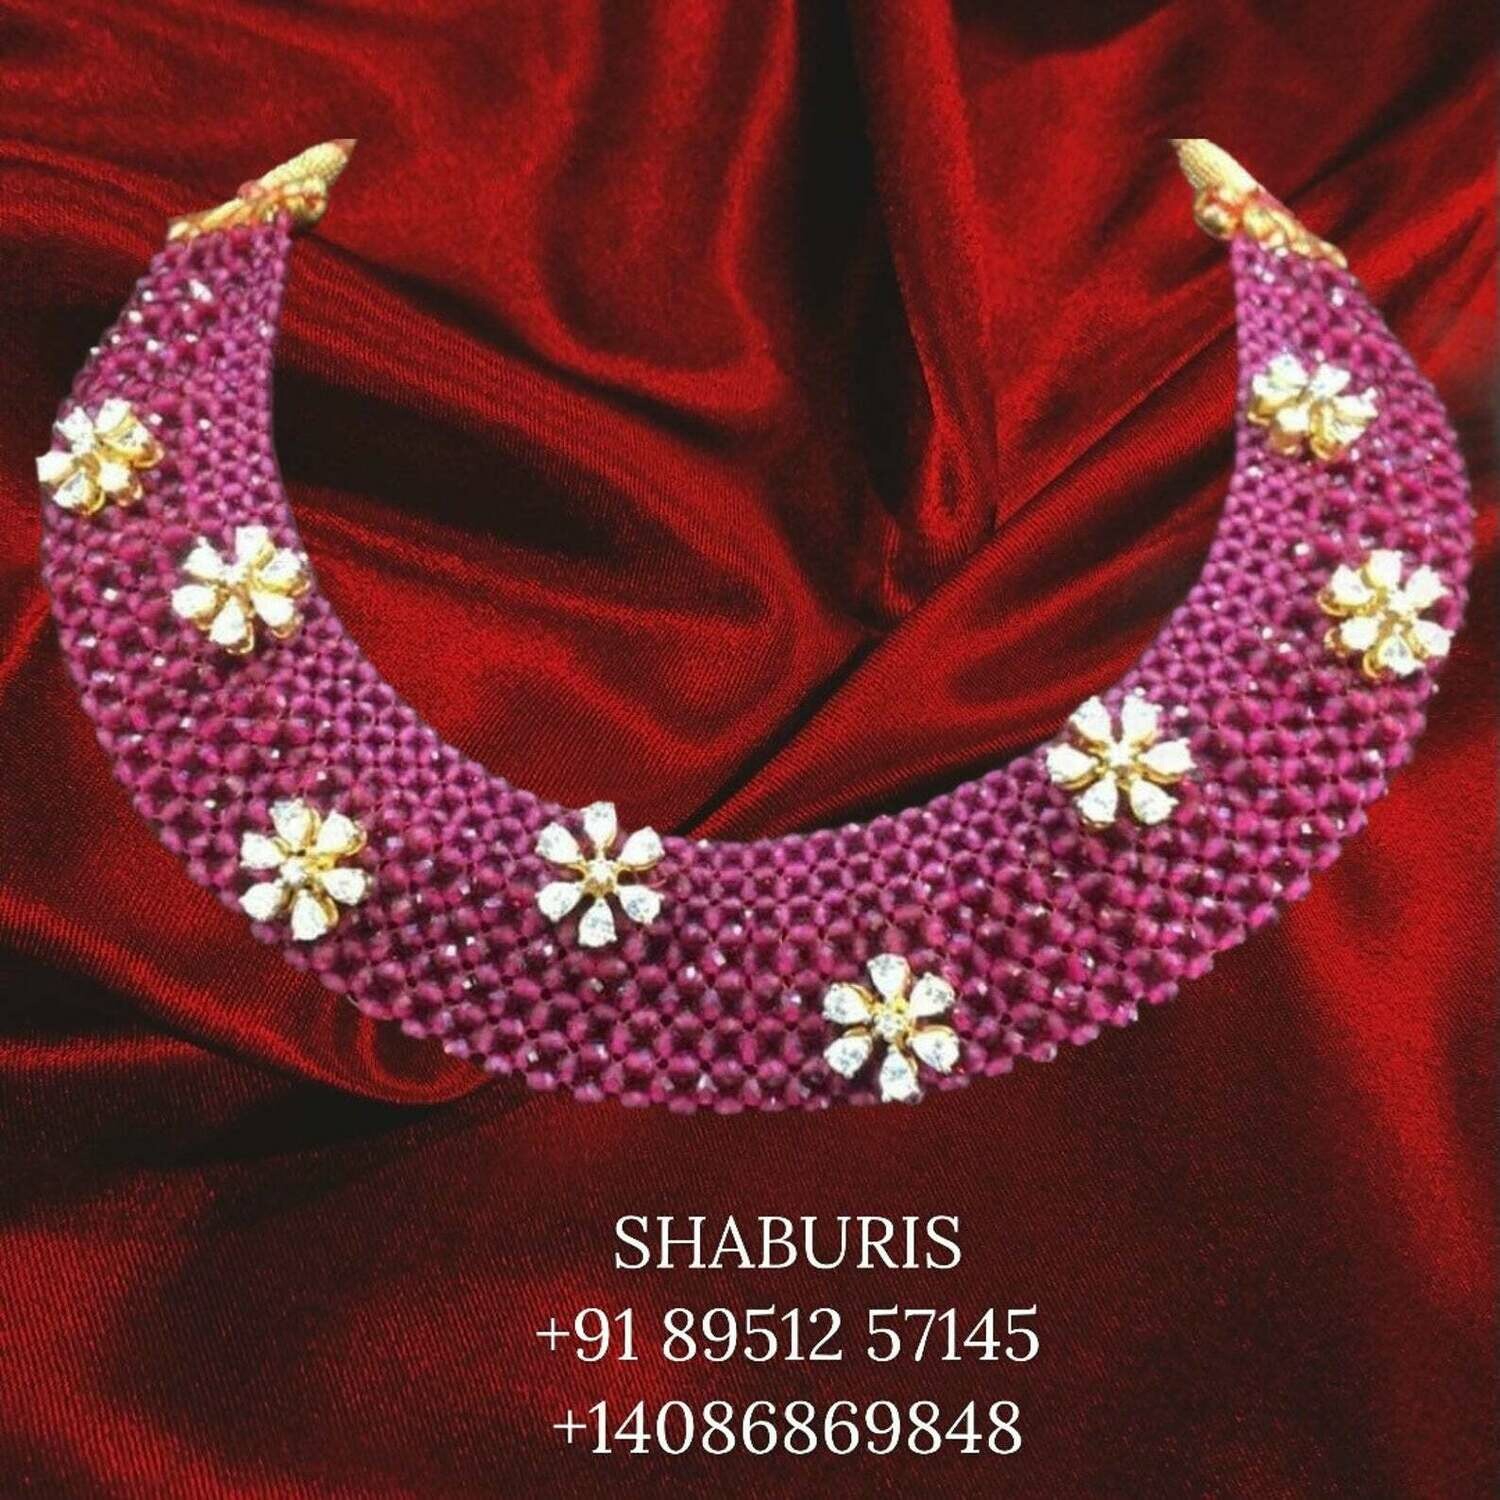 Latest Indian Jewelry,South Indian Jewelry,ruby gem stone jewelry polki jewelry bead jewelry indian gold jewelry designs -SHABURIS